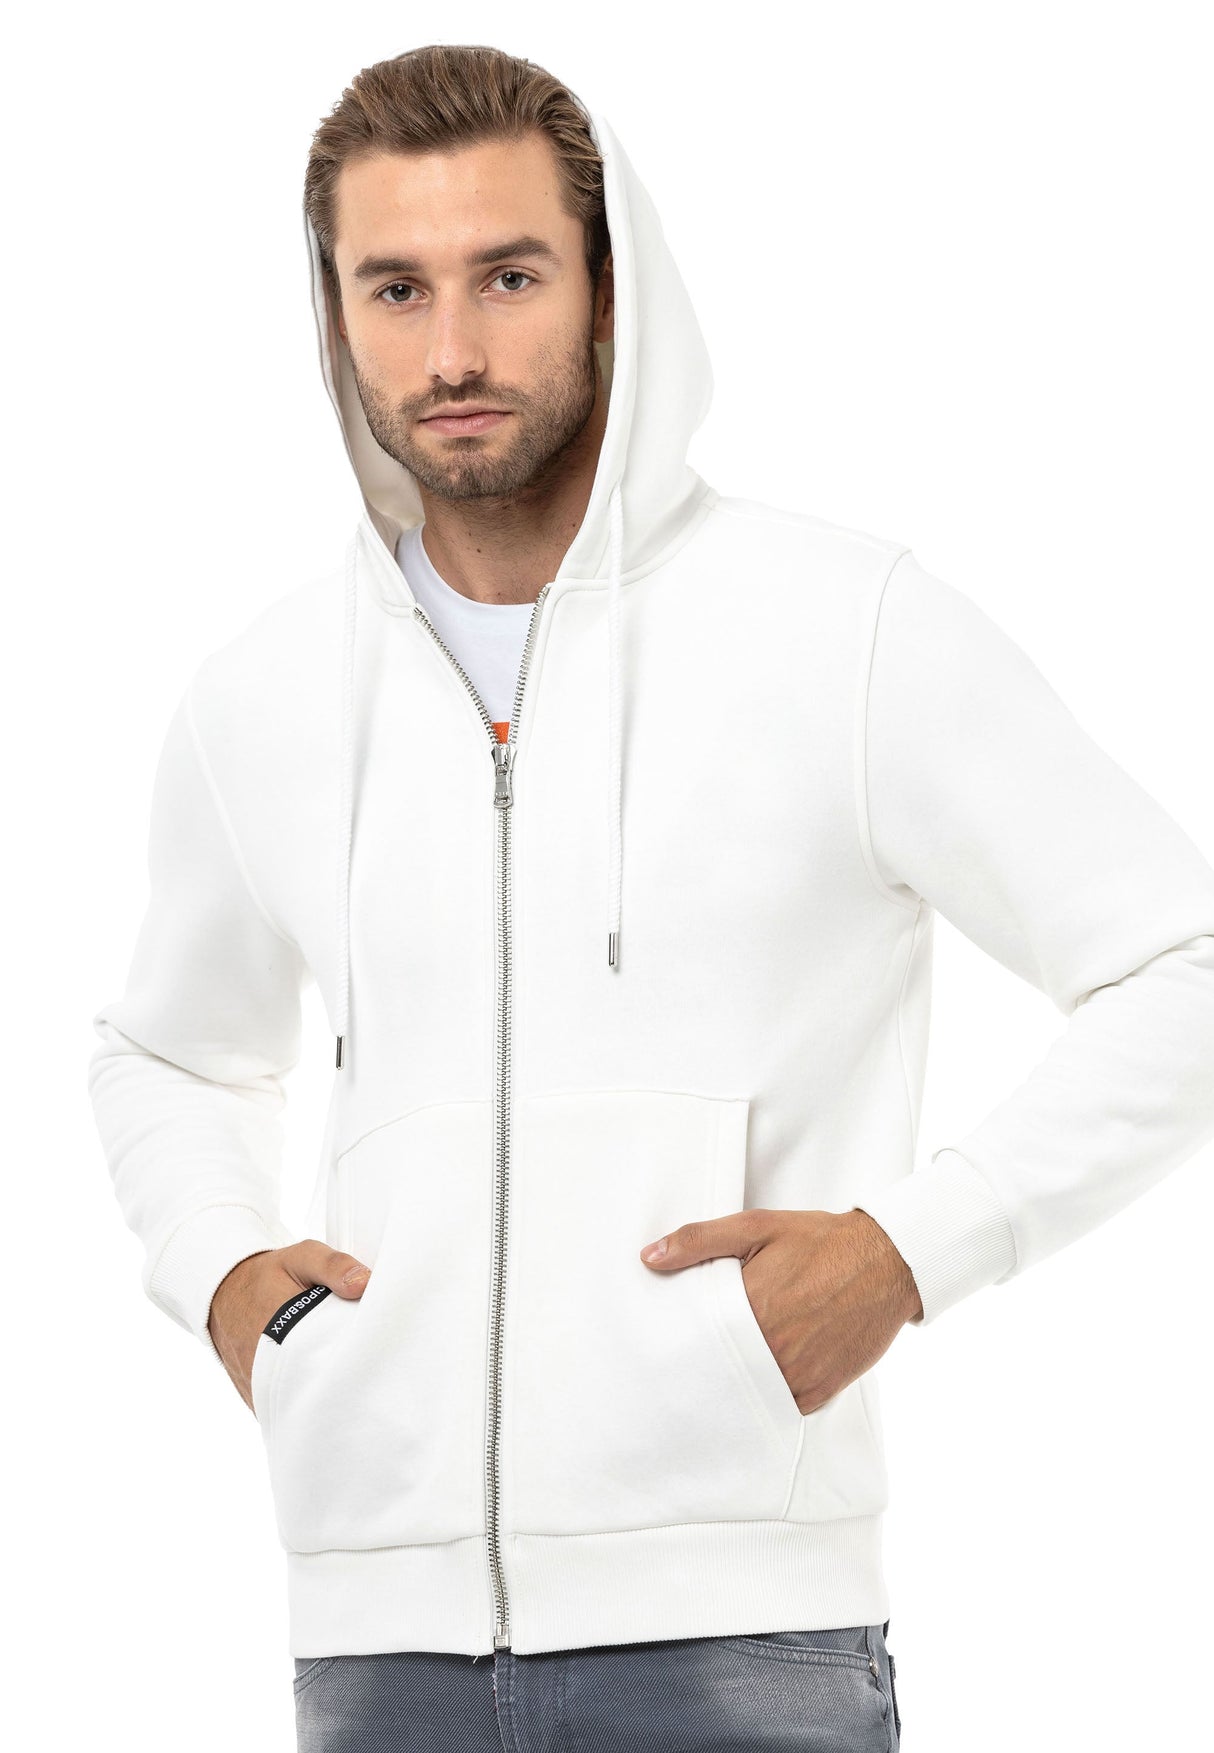 CL556 men's sweat jacket with hood